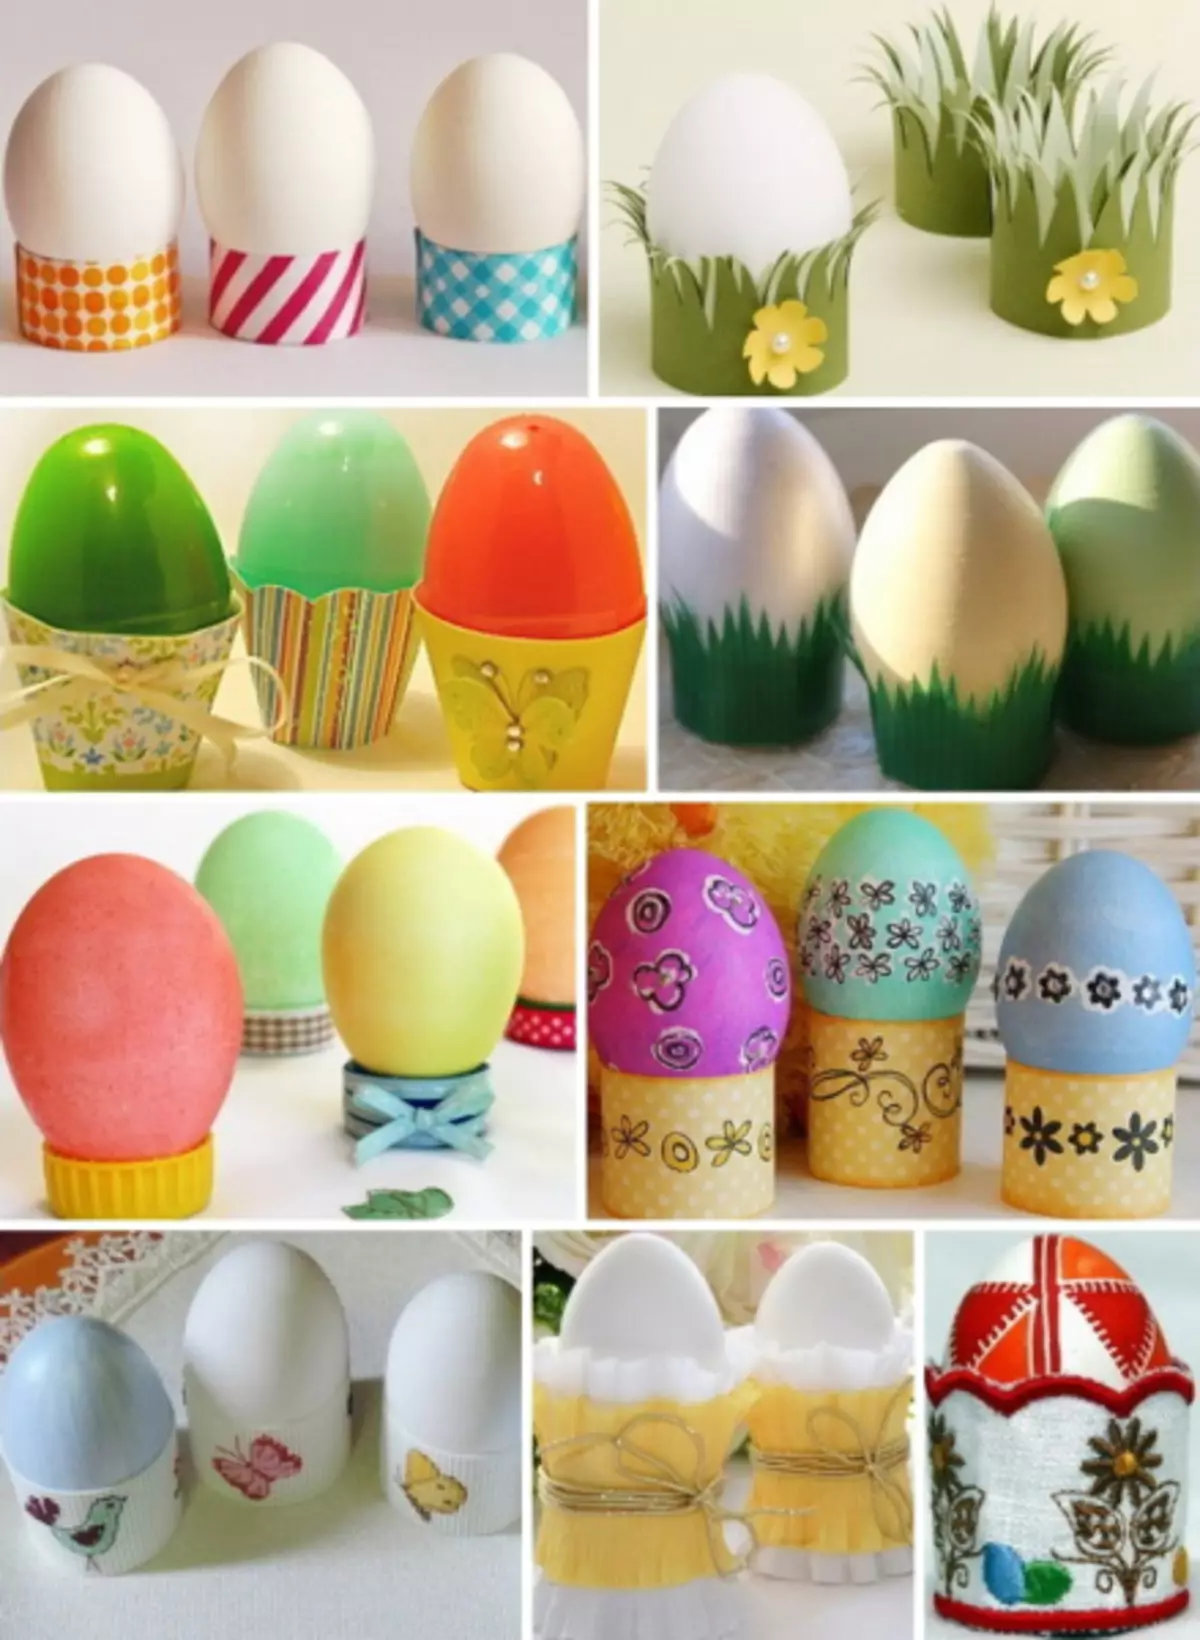 Soporte para los huevos de Pascua de los tubos y perlas de periódicos.